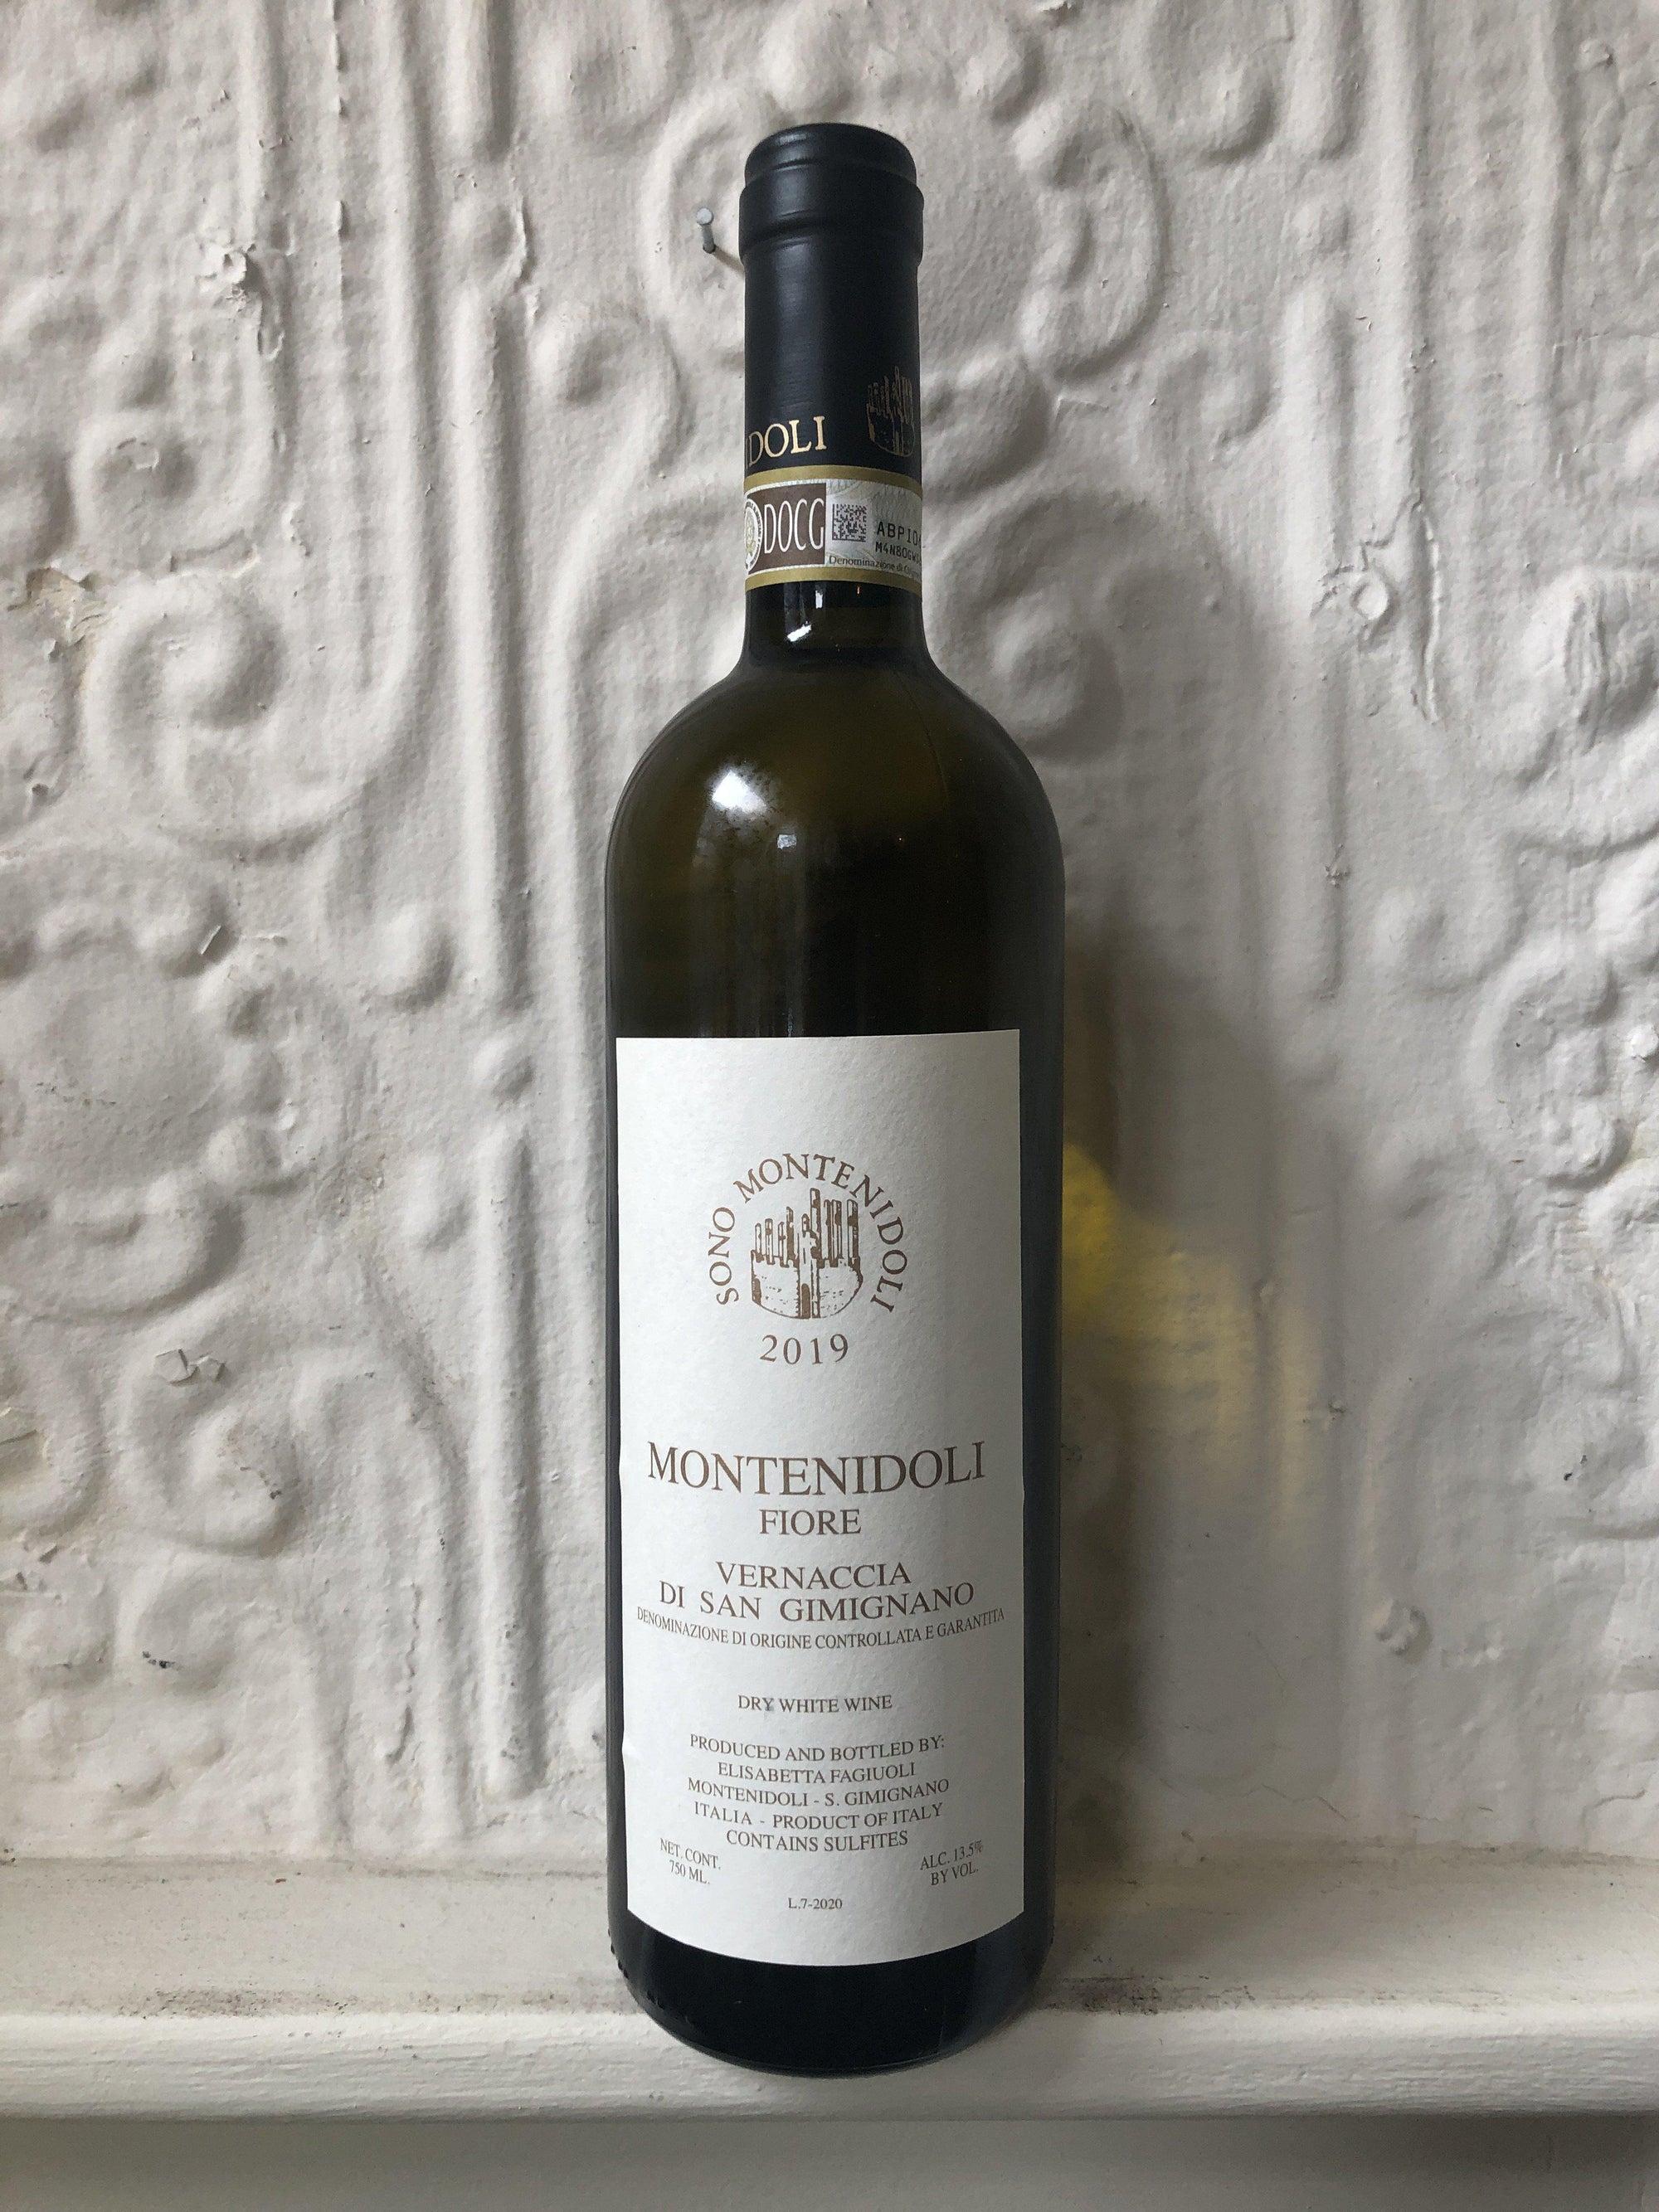 Vernaccia di San Gimignano "Fiore", Montenidoli 2019 (Tuscany, Italy)-Wine-Bibber & Bell